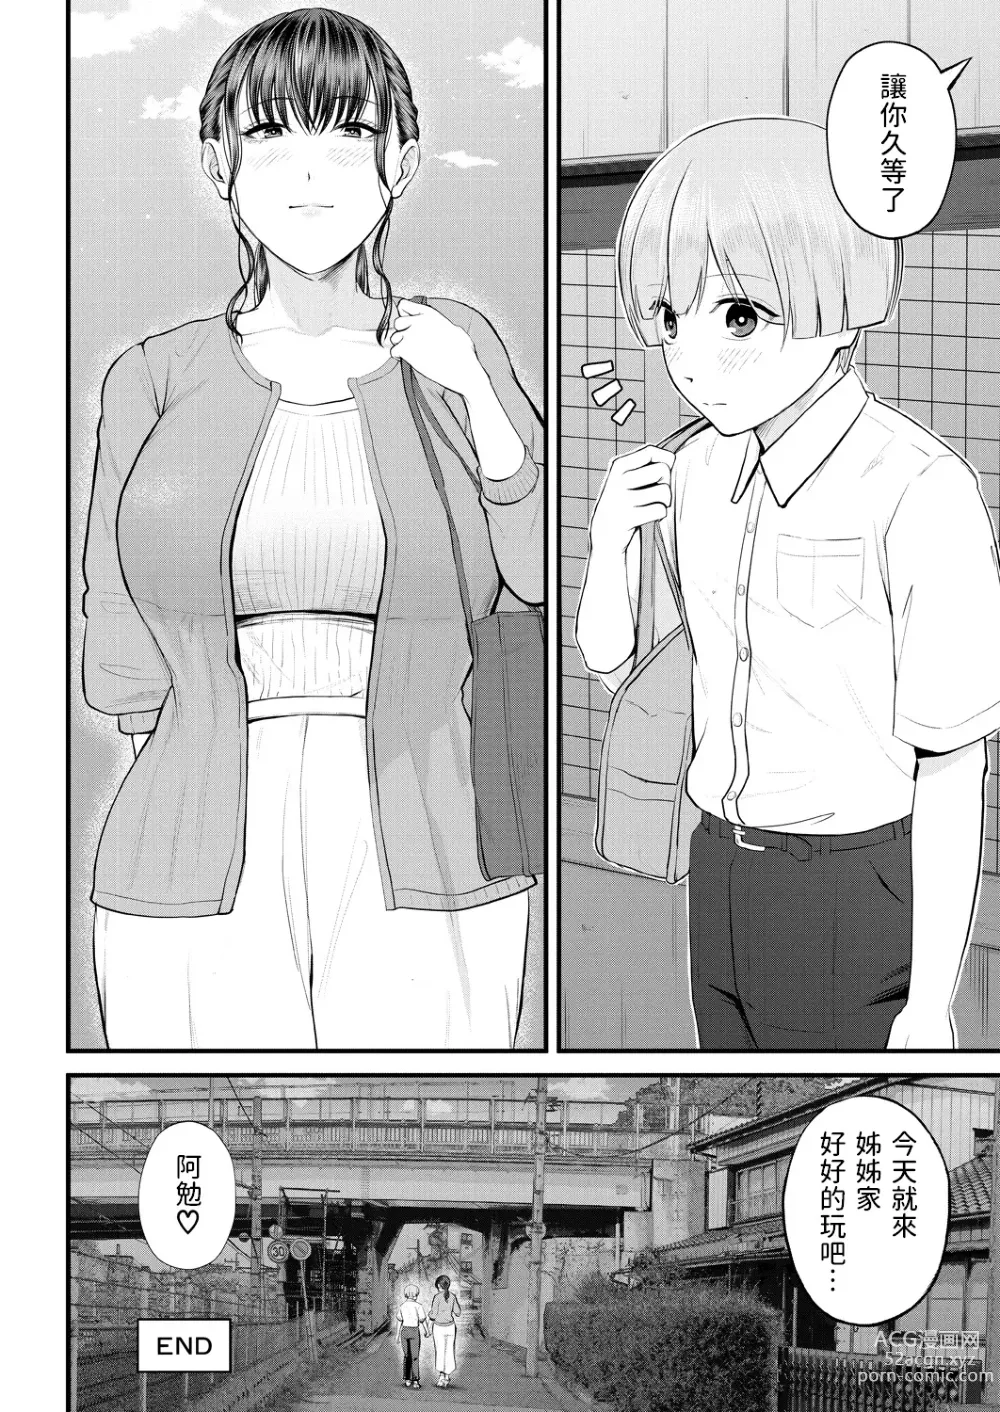 Page 48 of manga Naisho no Shokuba Taiken